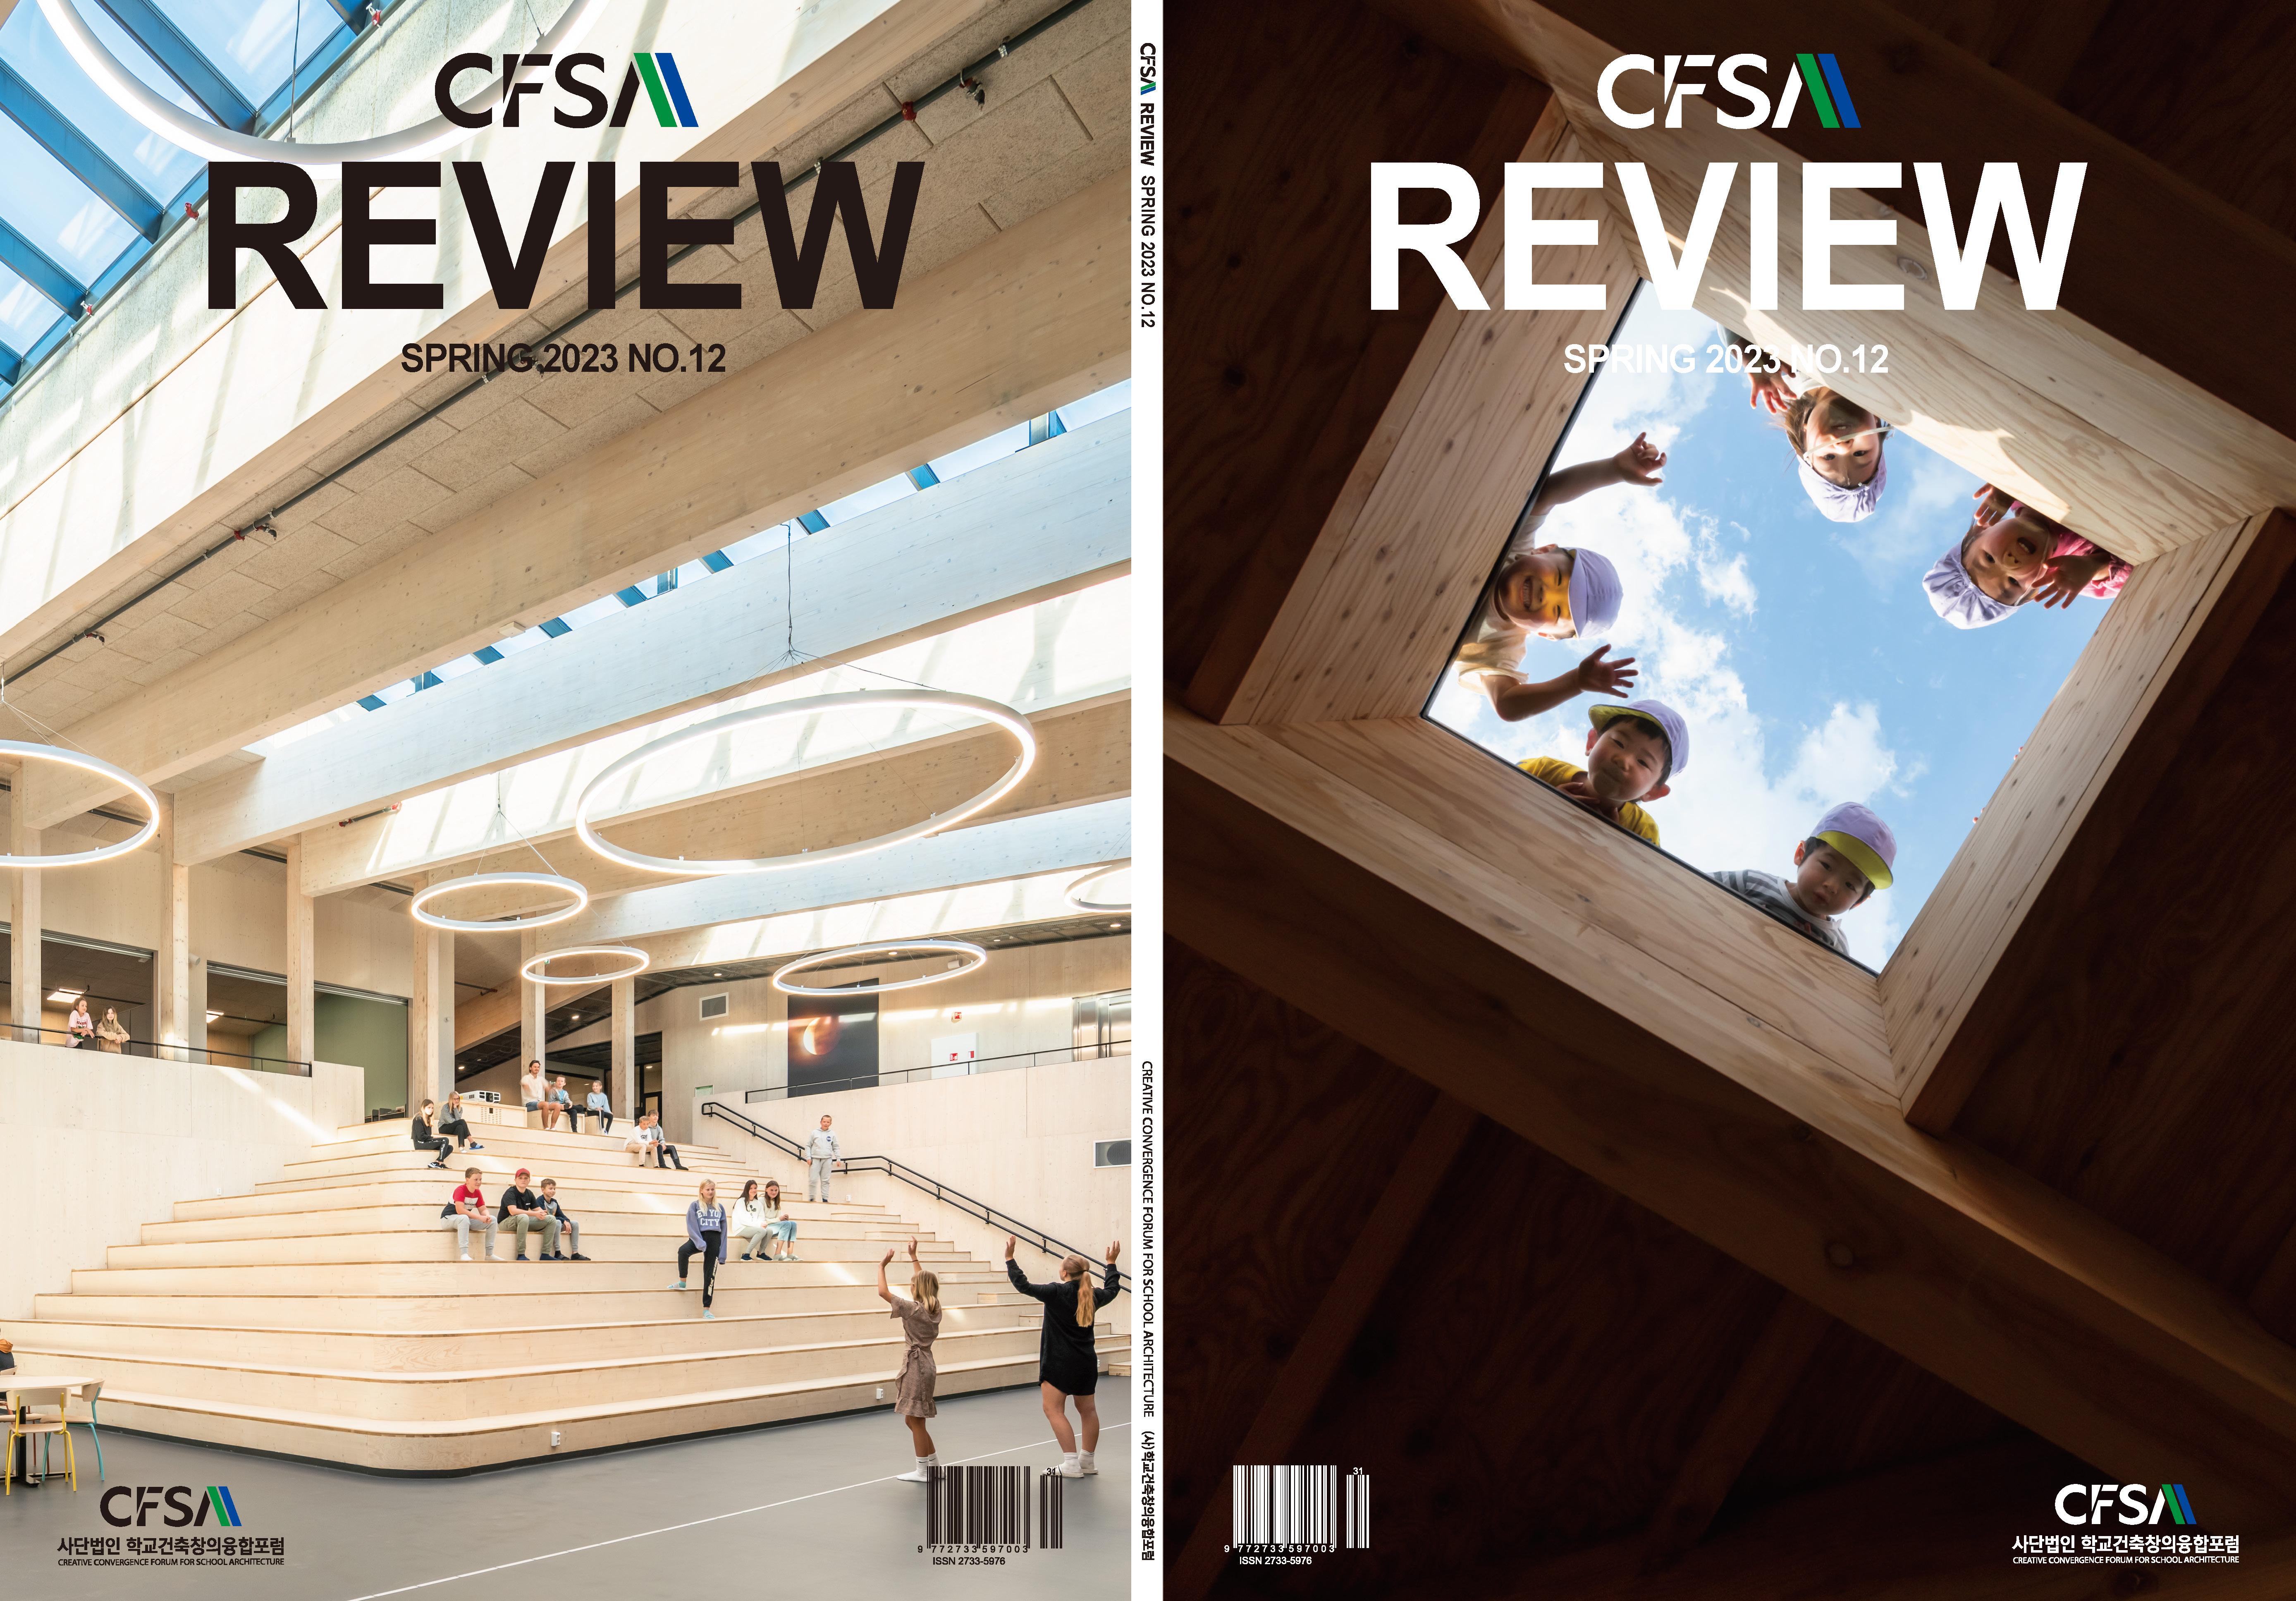 CFSA REVIEW SPRING 2023 NO.12